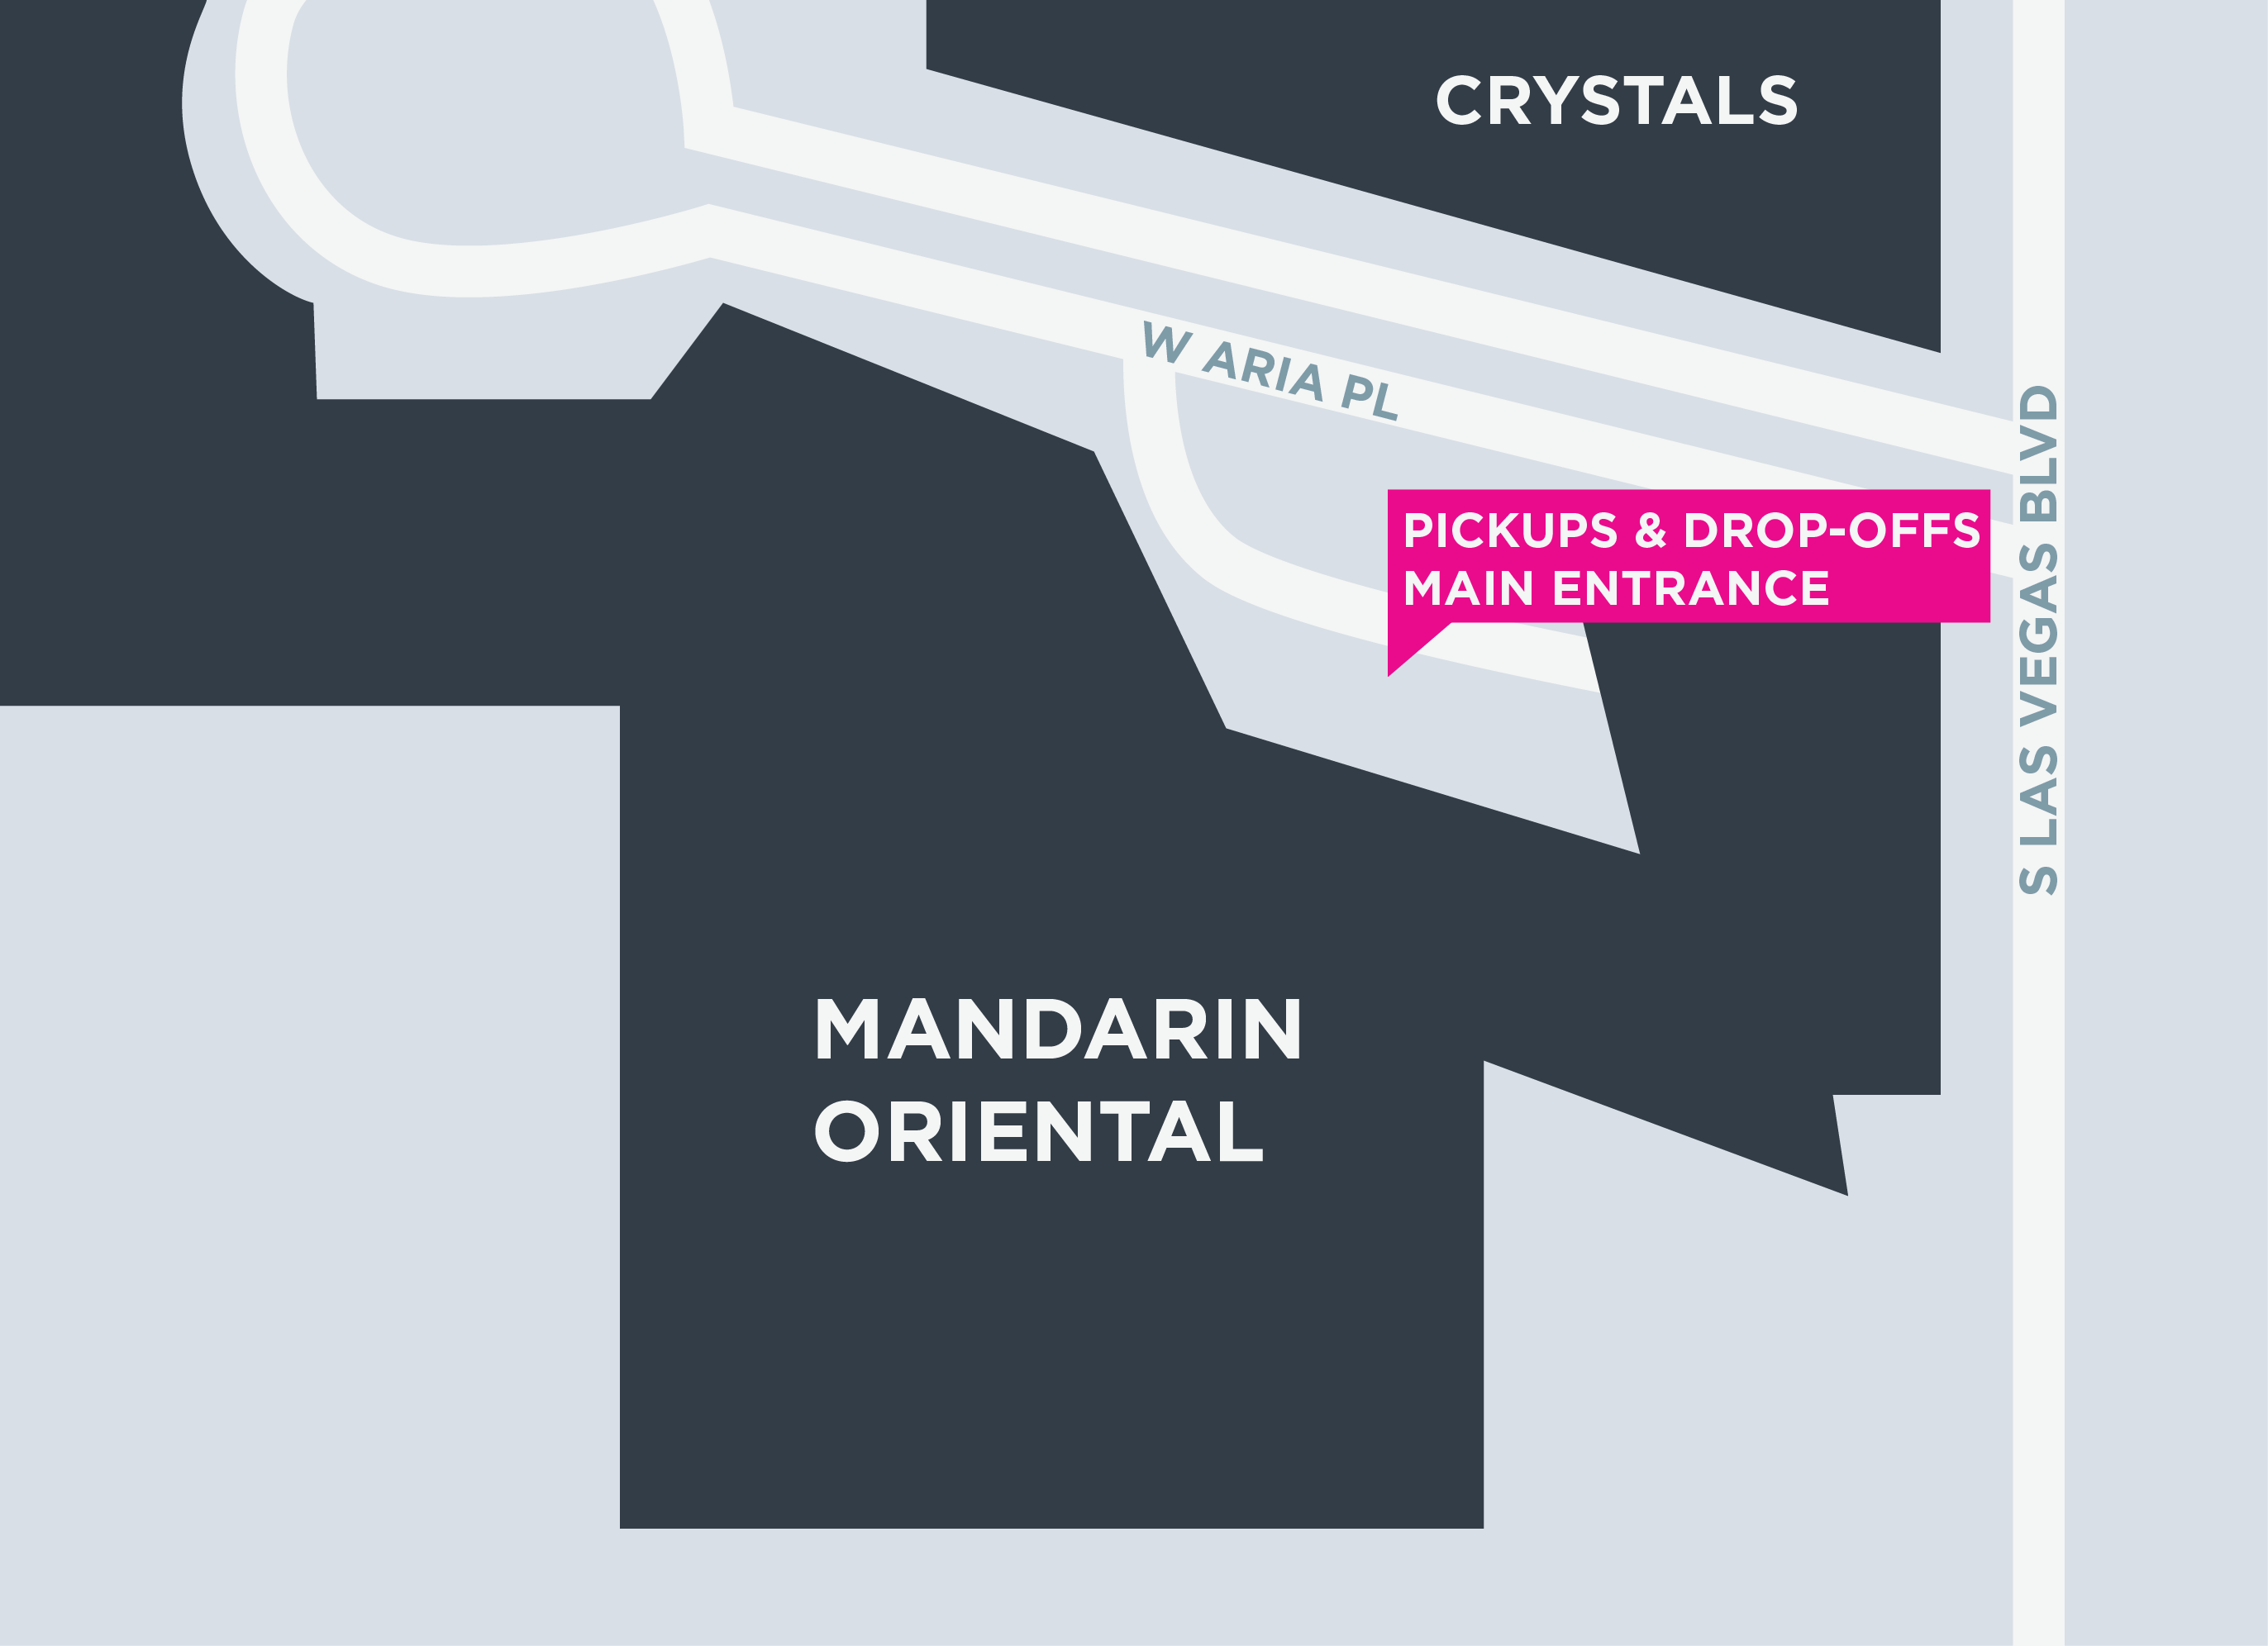 Cette image montre un plan du Mandarin Oriental, y compris les zones de départ et d'arrivée.